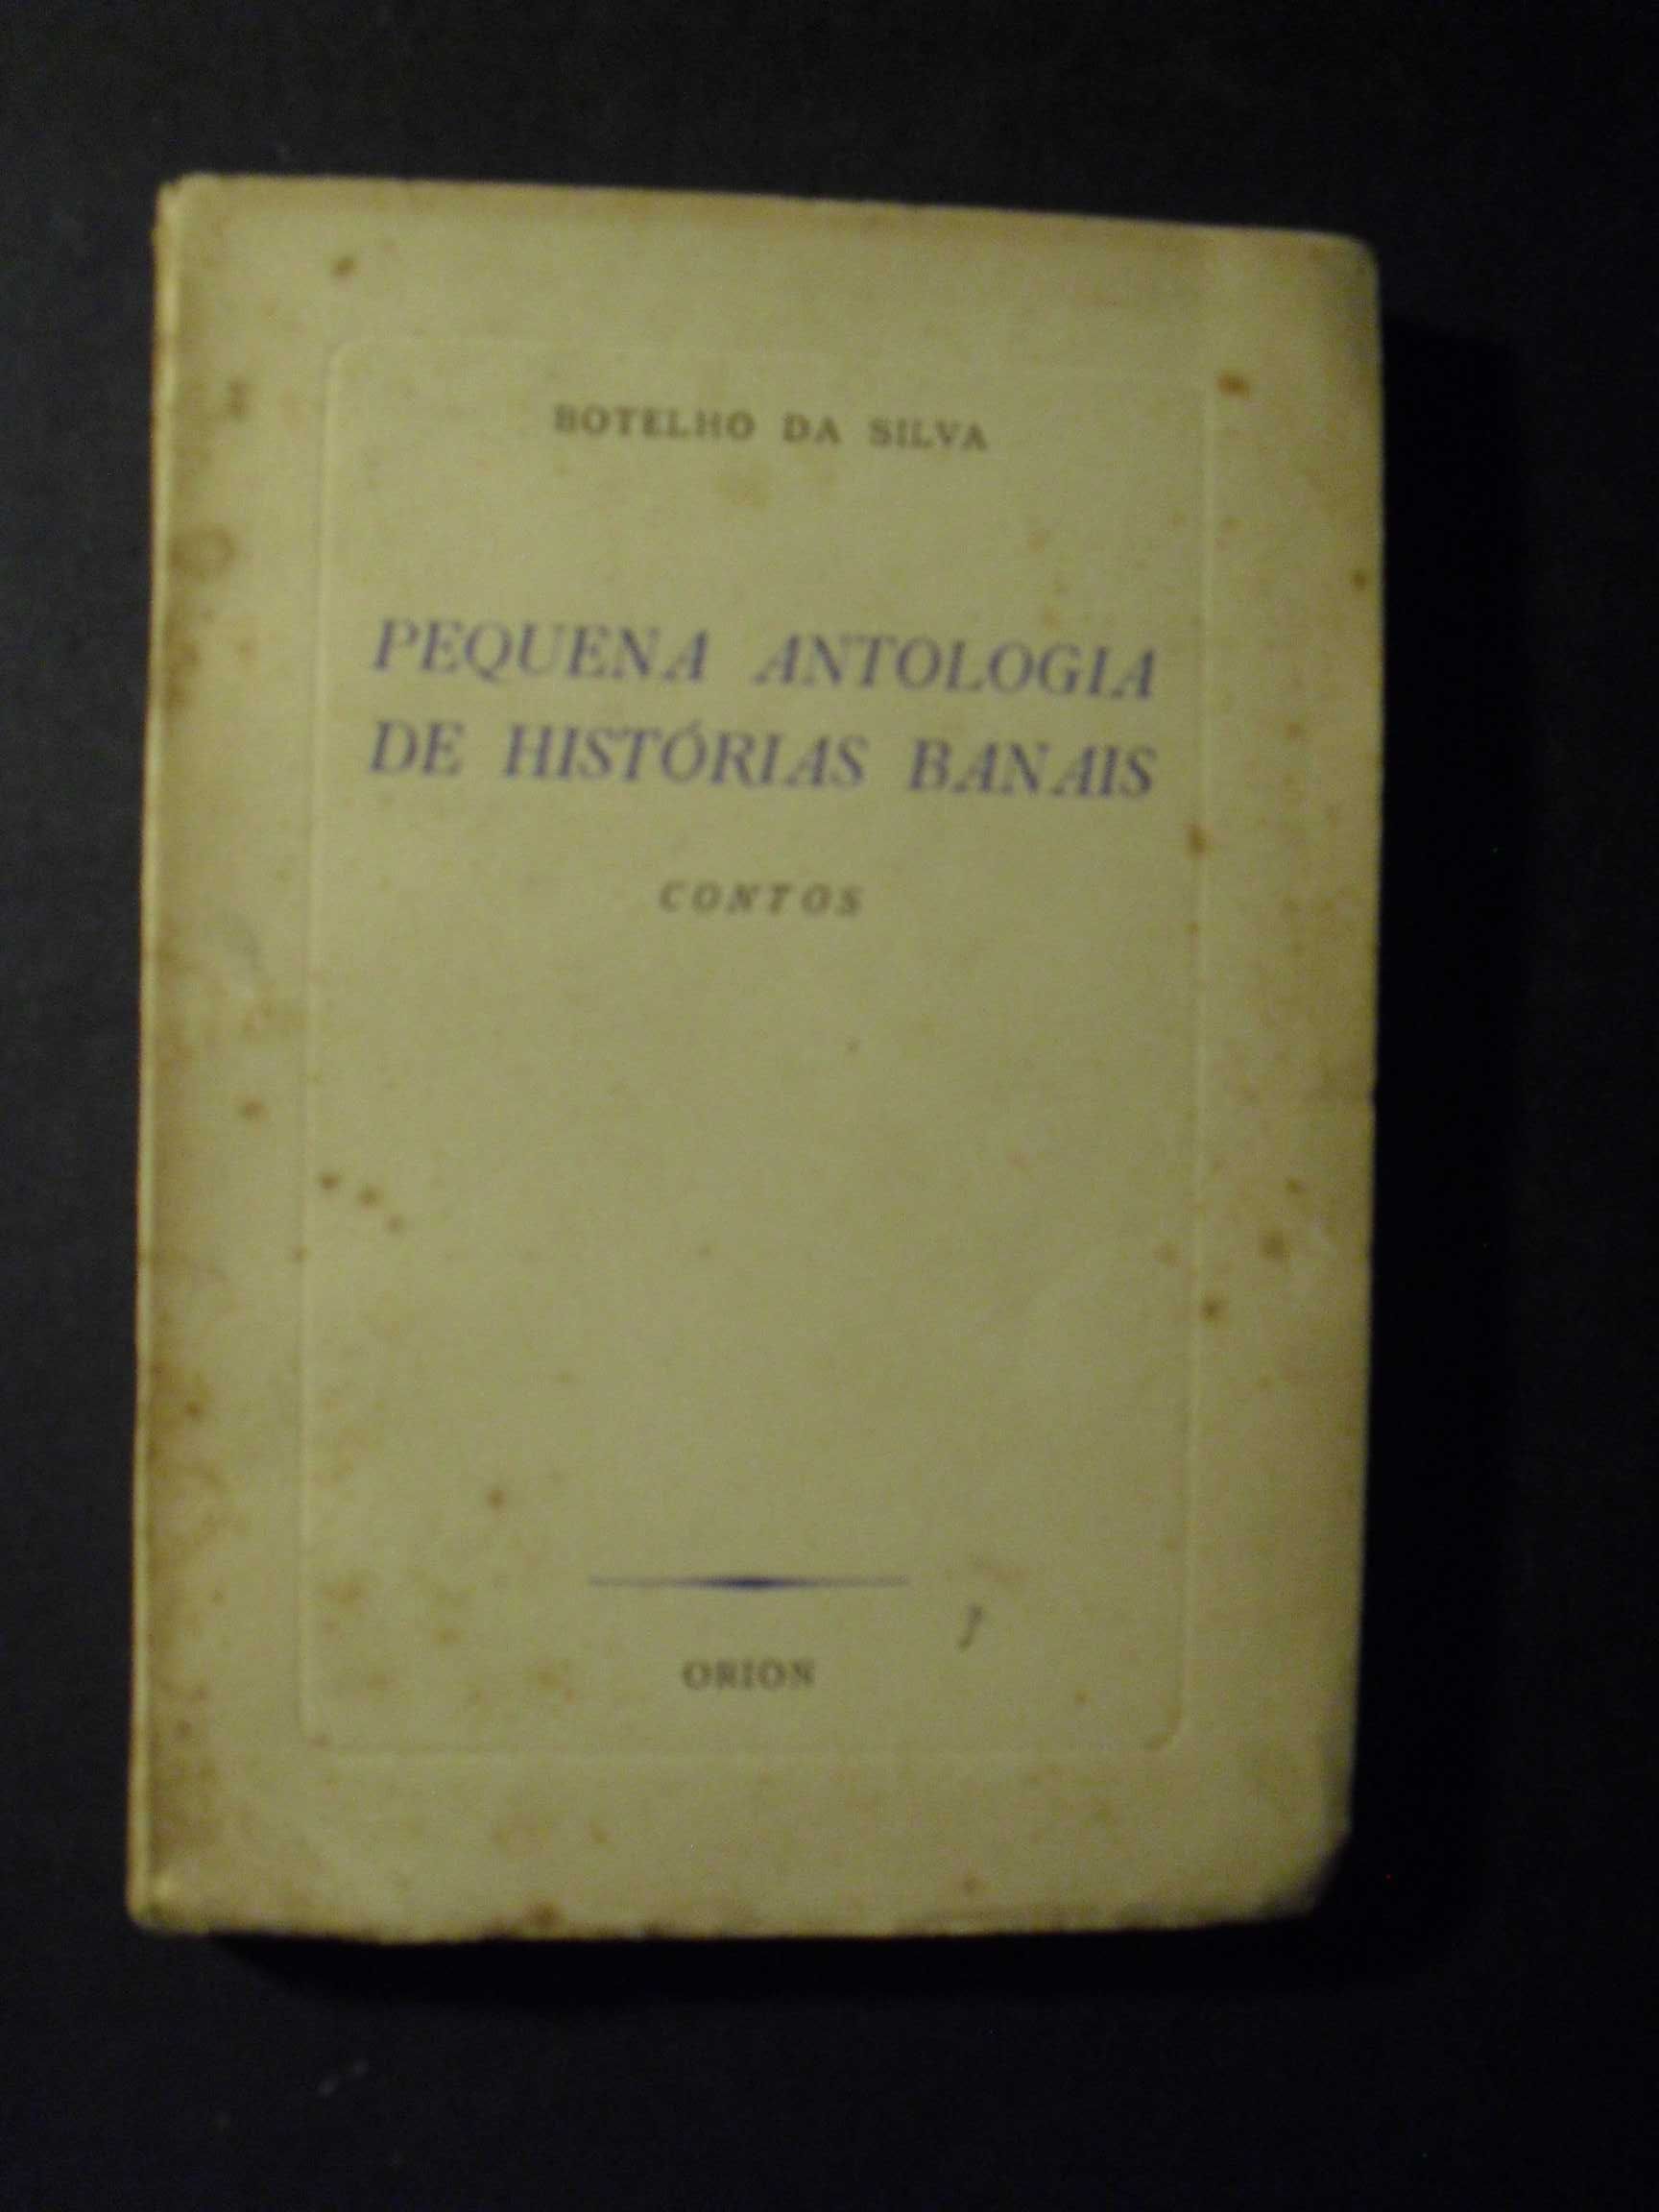 BOTELHO DA SILVA)- PEQUENA ANTOLOGIA DE HISTÓRIAS BANAIS